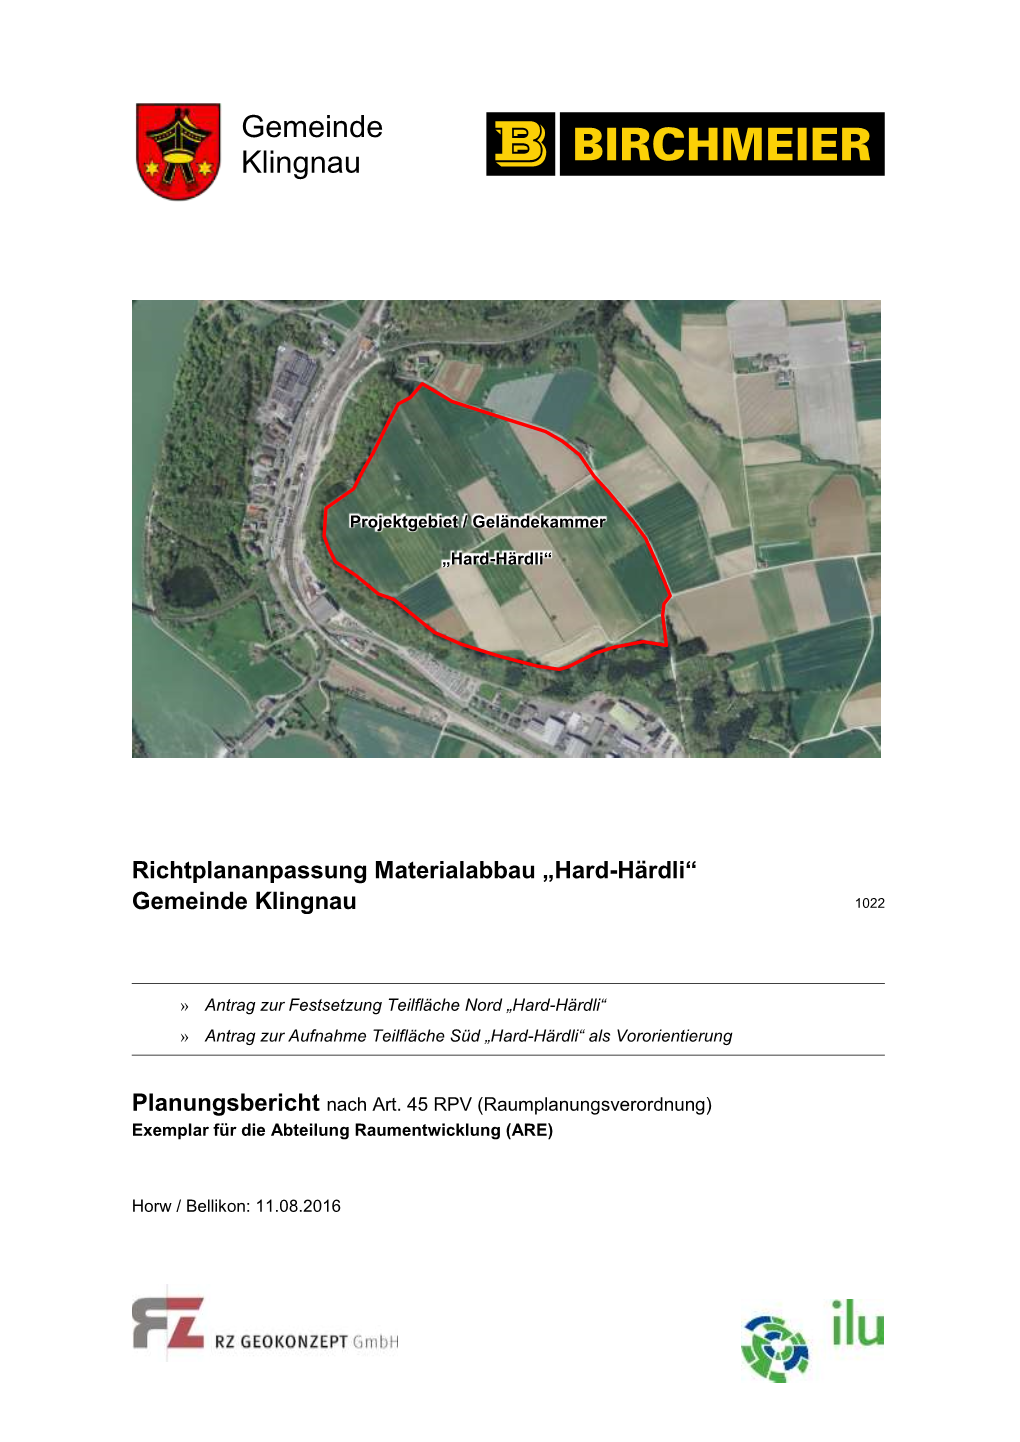 Planungsbericht KG Klingnau